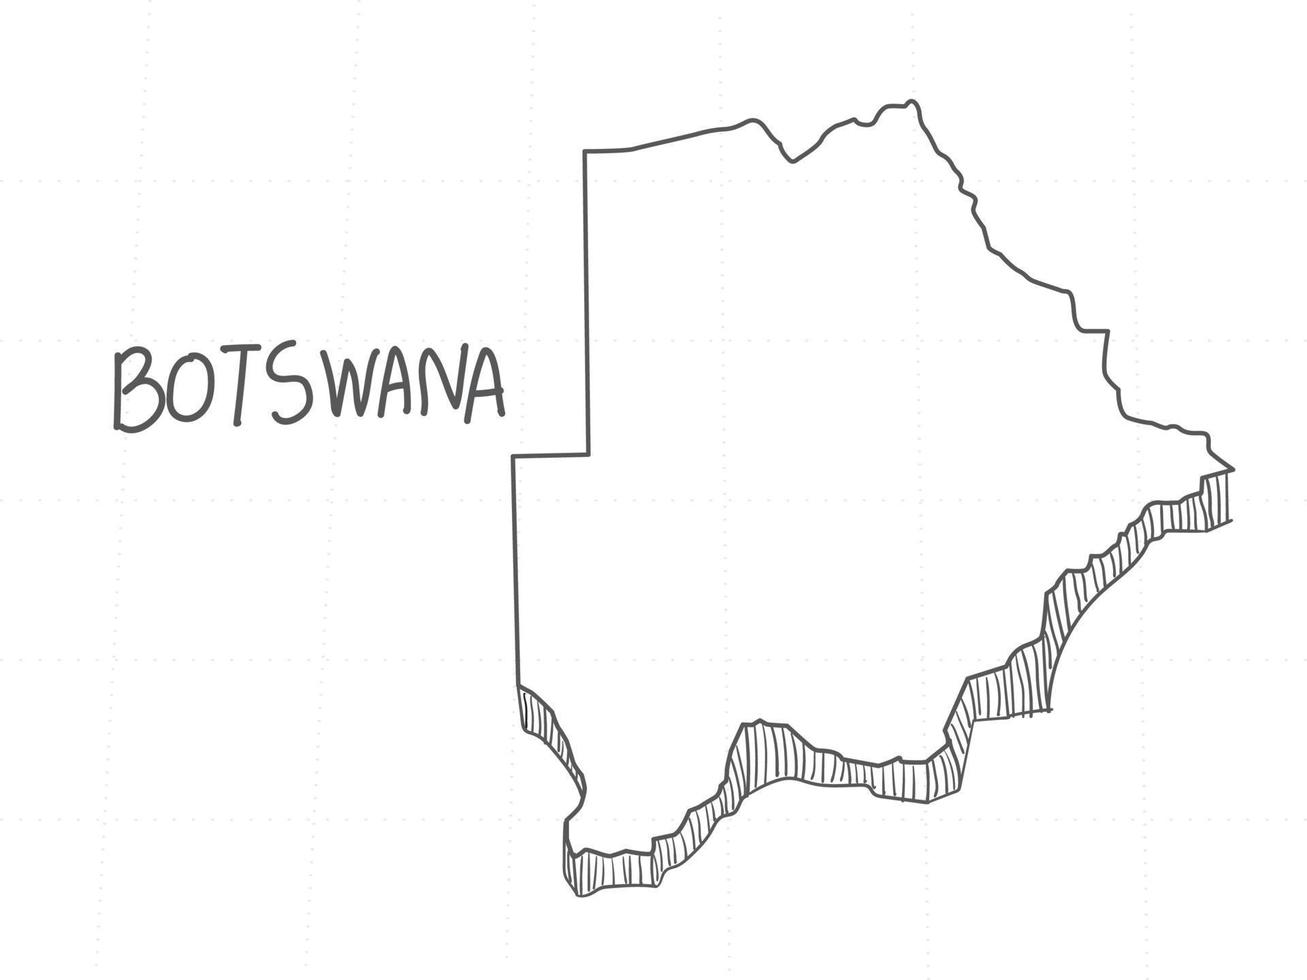 mão desenhada do mapa 3d do botswana em fundo branco. vetor